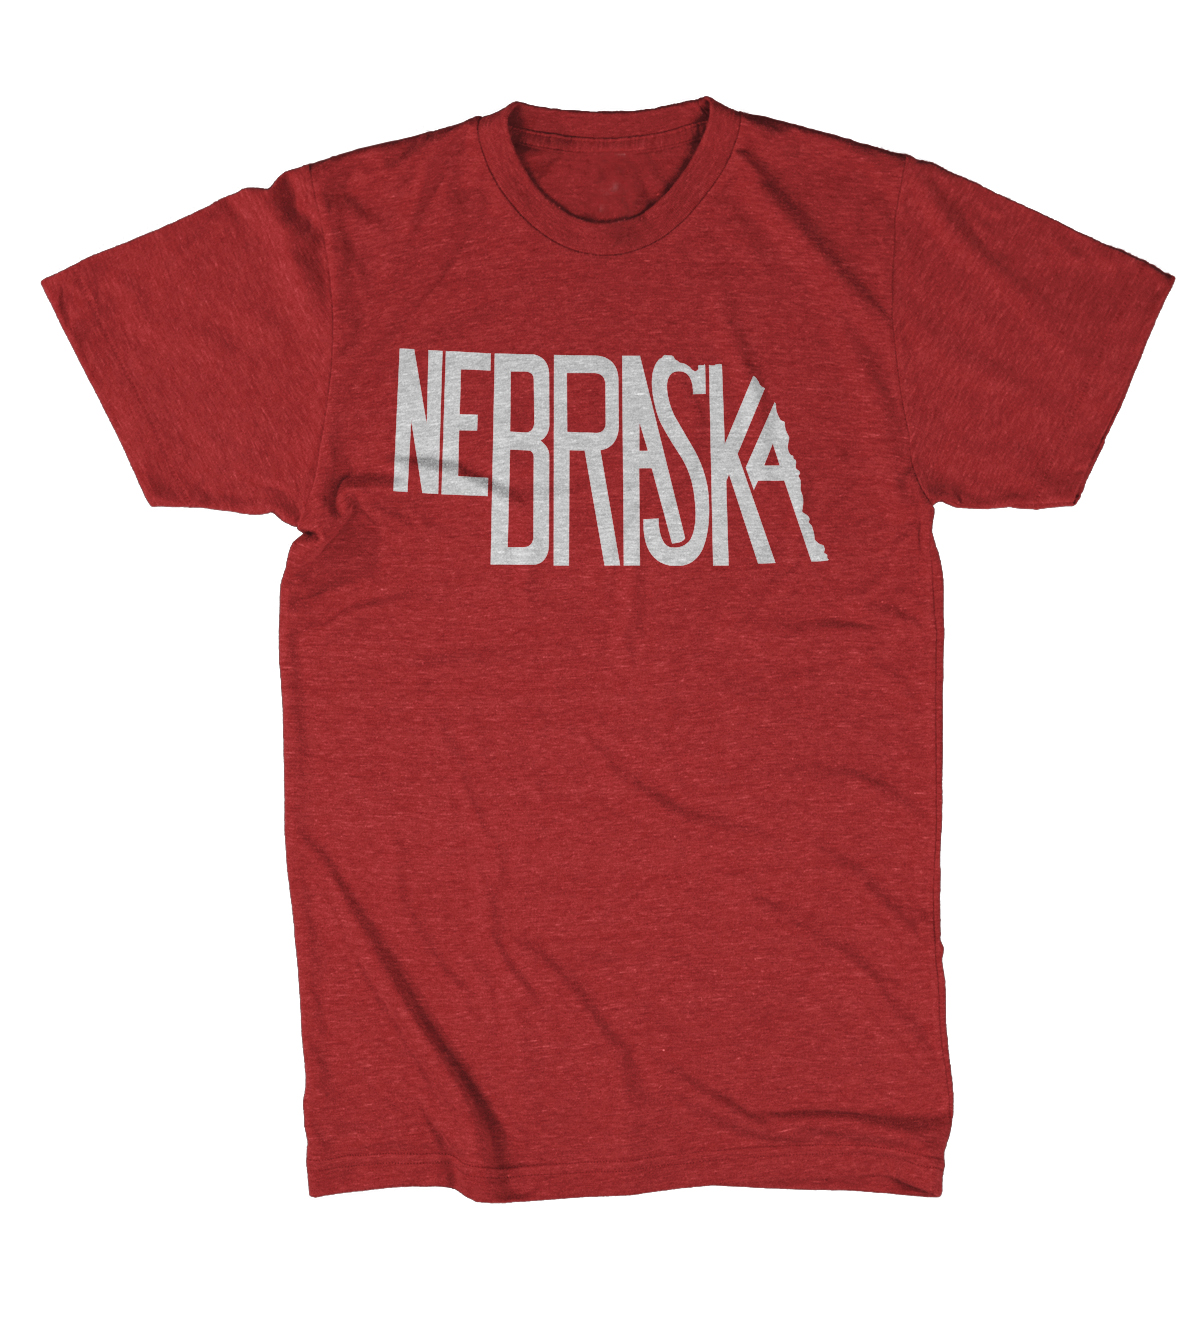 Nebraska Stately Shirt